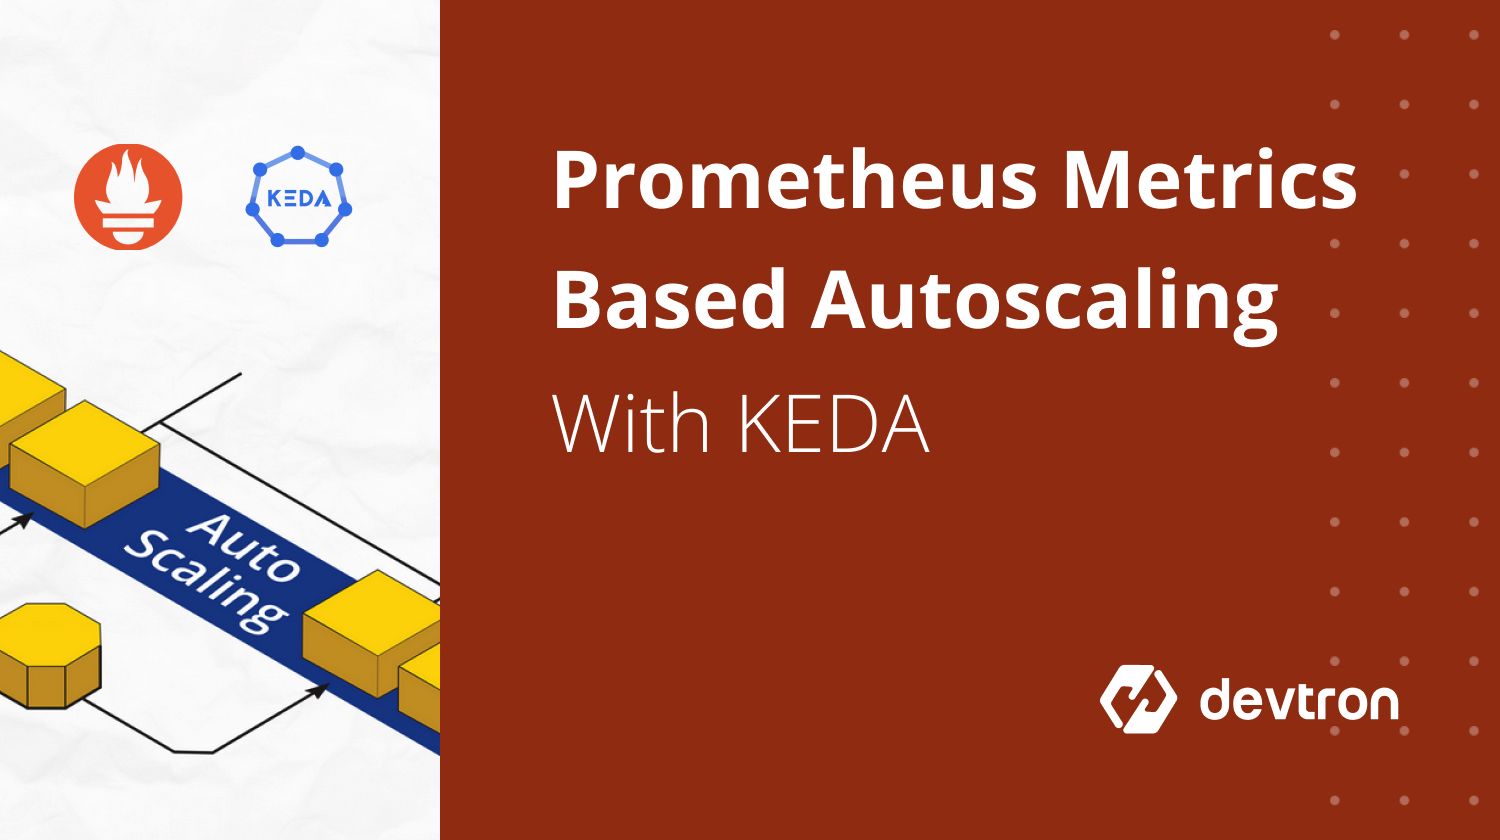 Autoscaling Using KEDA Based On Prometheus Metrics